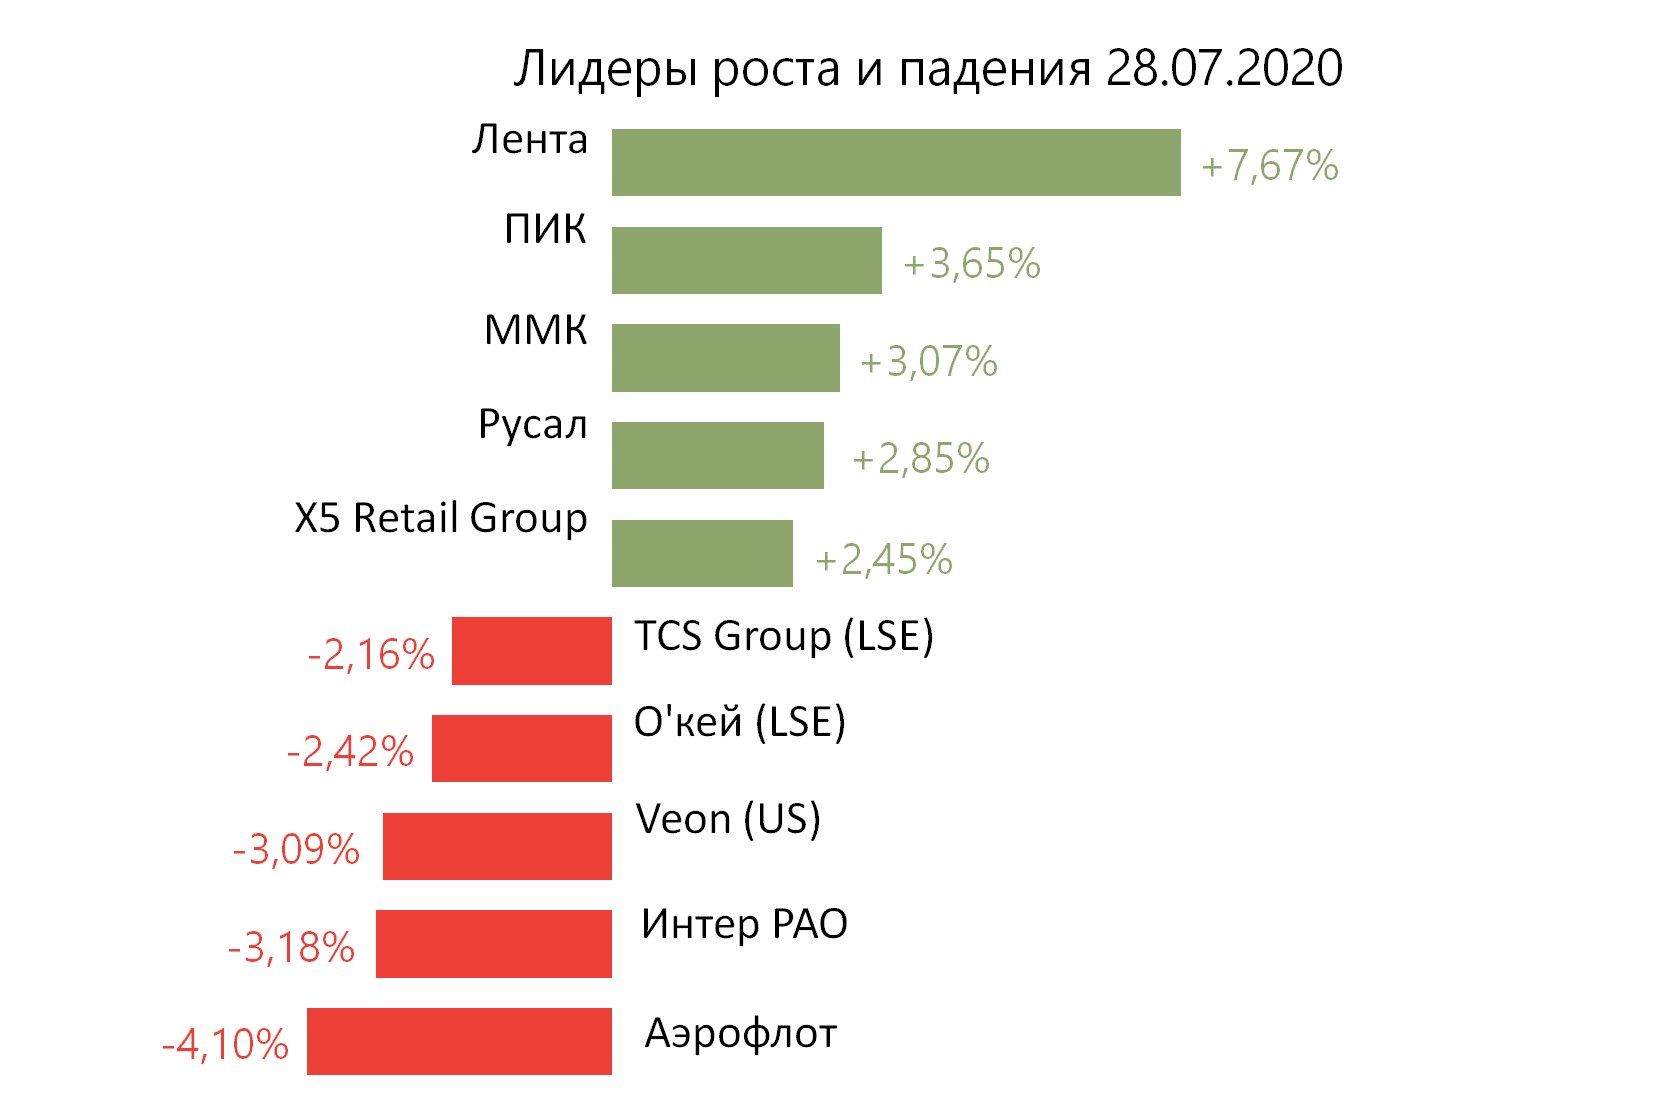 Лидеры роста и падения российского рынка на 28 июля